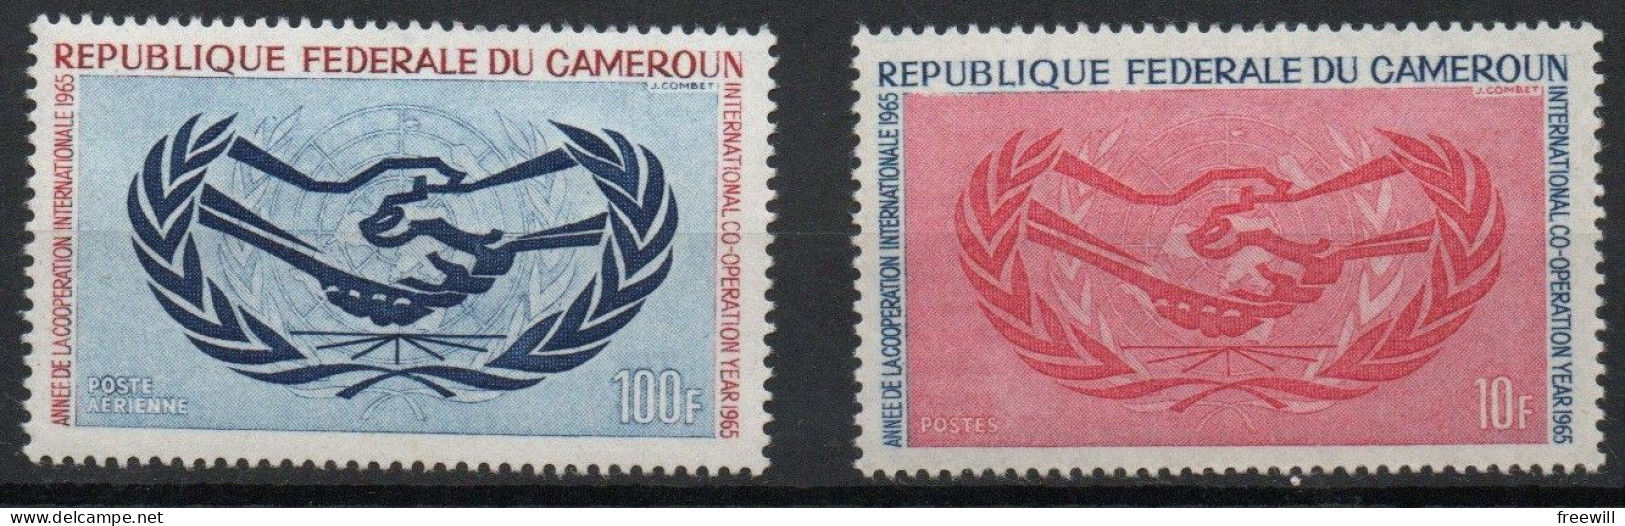 Année de la coopération internationale- Internationale co-operation year  XX 1965